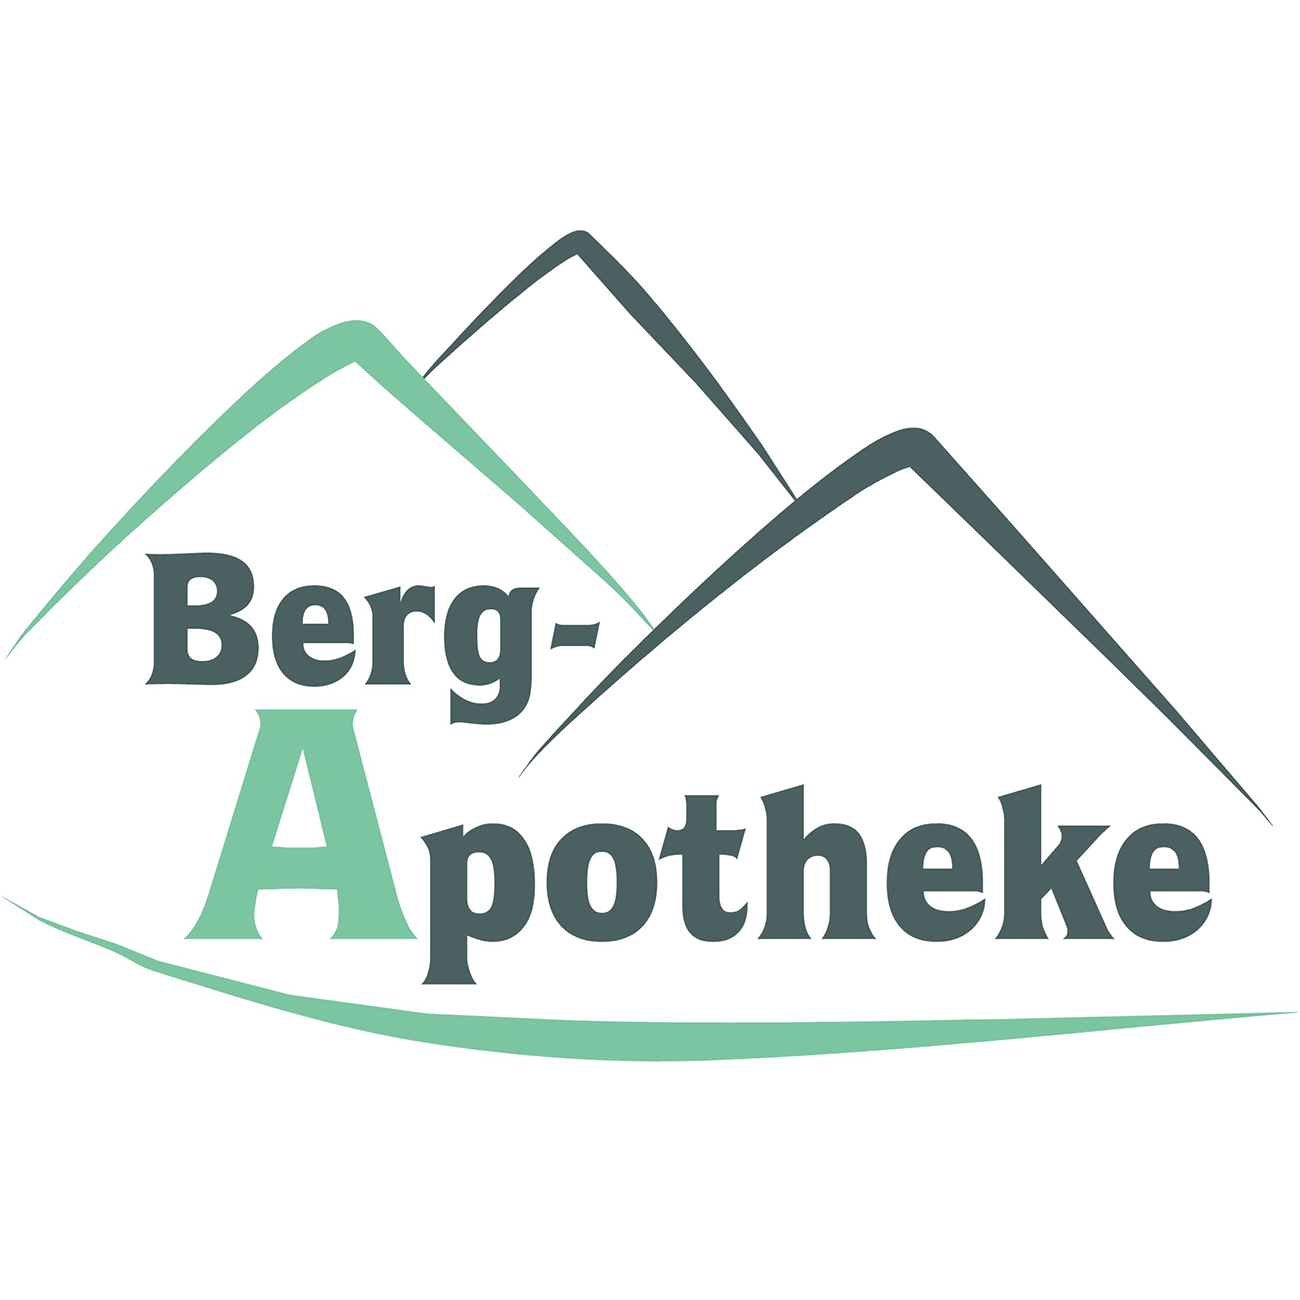 Berg-Apotheke in Harzgerode - Logo